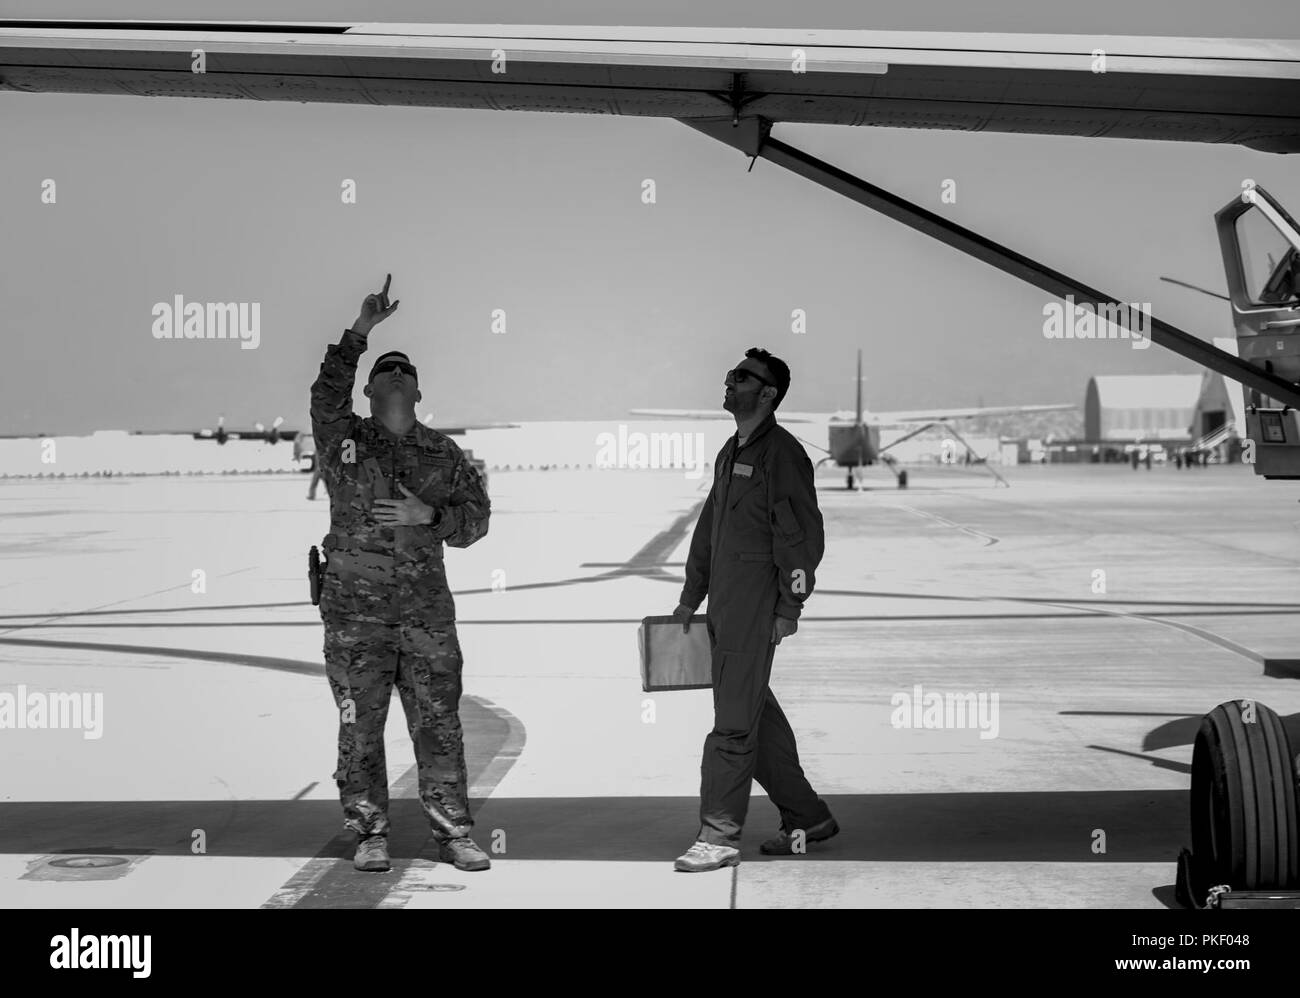 KABUL, Afganistán (25 de julio, 2018) -- un piloto estadounidense (izquierda) asignado a la 438th ala expedicionaria aérea como parte de capacitar, asesorar y ayudar Command-Air (TAAC-aire) y un piloto afgano (derecha) de un Cessna 208B asignada a la 1ª Ala fuerza aérea en Afganistán Hamid Karzai Aeropuerto Internacional (HKIA), Afganistán, inspeccionar las alas del avión antes del despegue el 25 de julio de 2018. La misión de TAAC-Air es capacitar, asesorar y asistir a los socios afganos para desarrollar un profesional, capaz y sostenible de la fuerza aérea afgana. Foto de stock